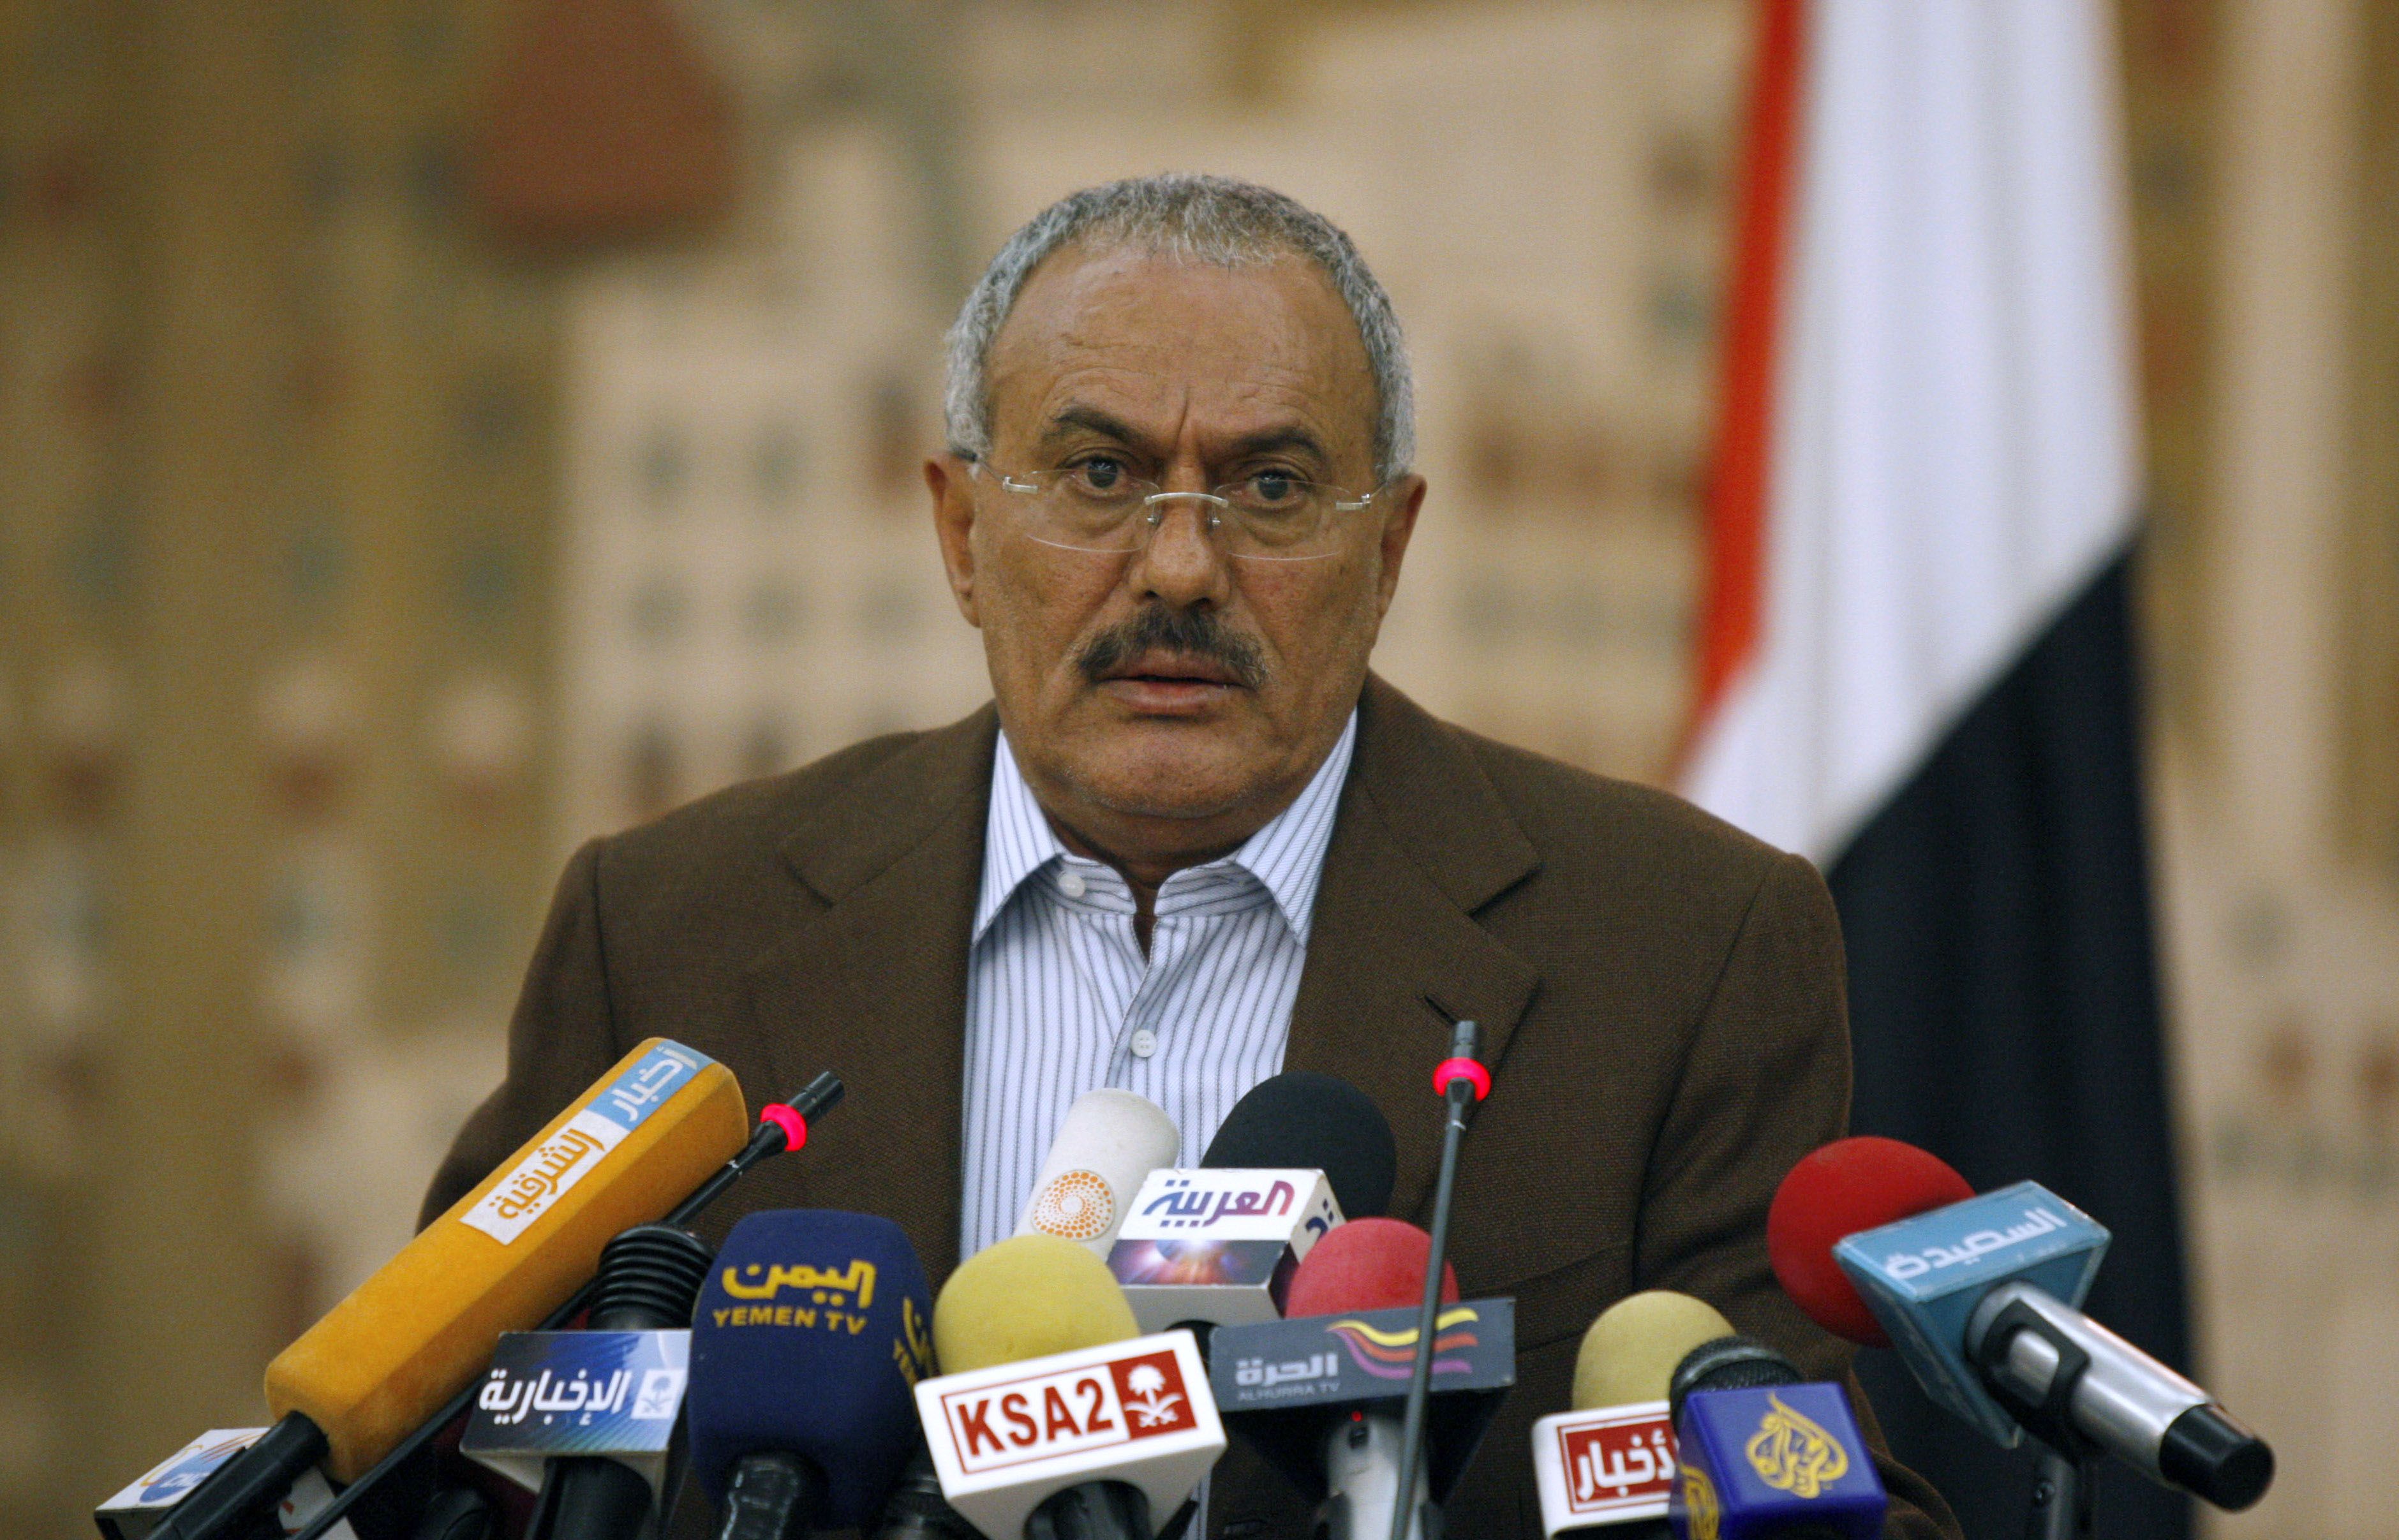 President, Avgår, Uppror, Jemen, Revolution, USA, Demonstration, Ali Abdullah Saleh